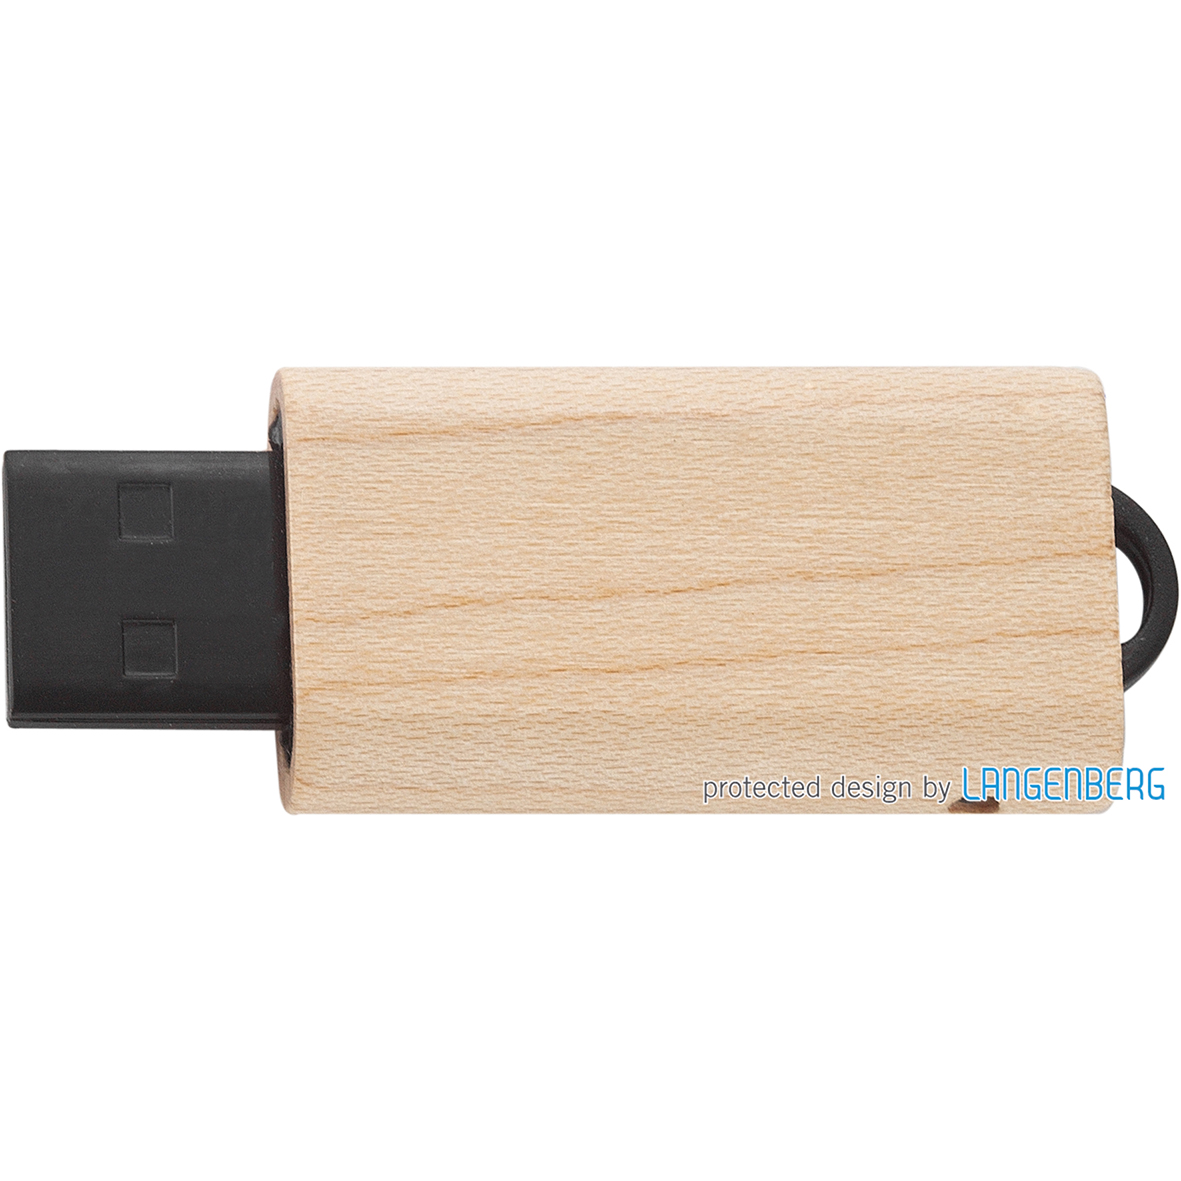 USB Stick L-601